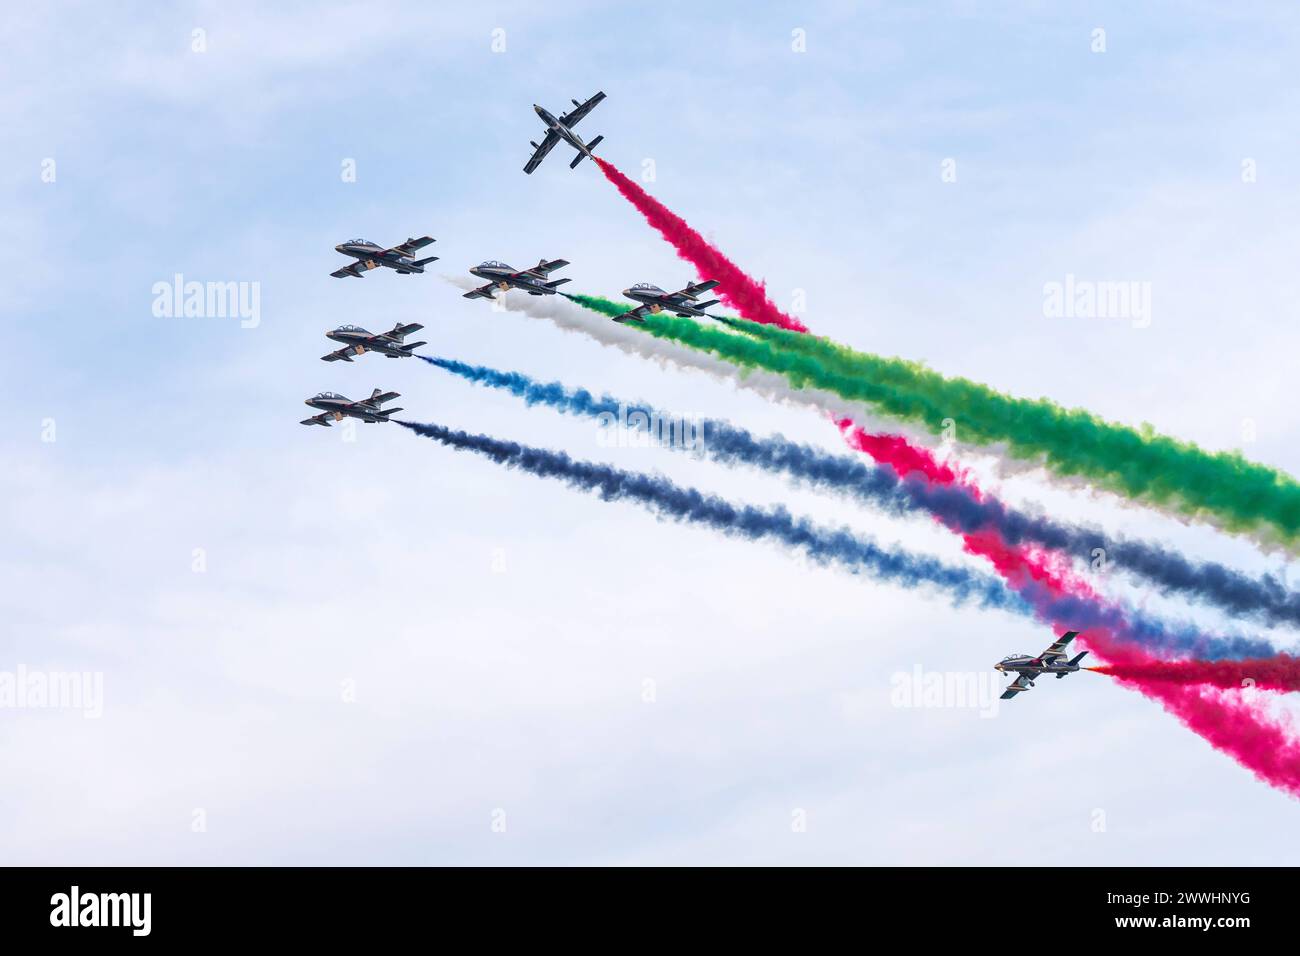 ABU DHABI, VAE - 02. DEZEMBER 2018: Al Fursan Kunstflugteam macht Stunts am Himmel in Abu Dhabi, VAE ABU DHABI, VAE - ABU DHABI, VAE - 02. DEZEMBER Stockfoto